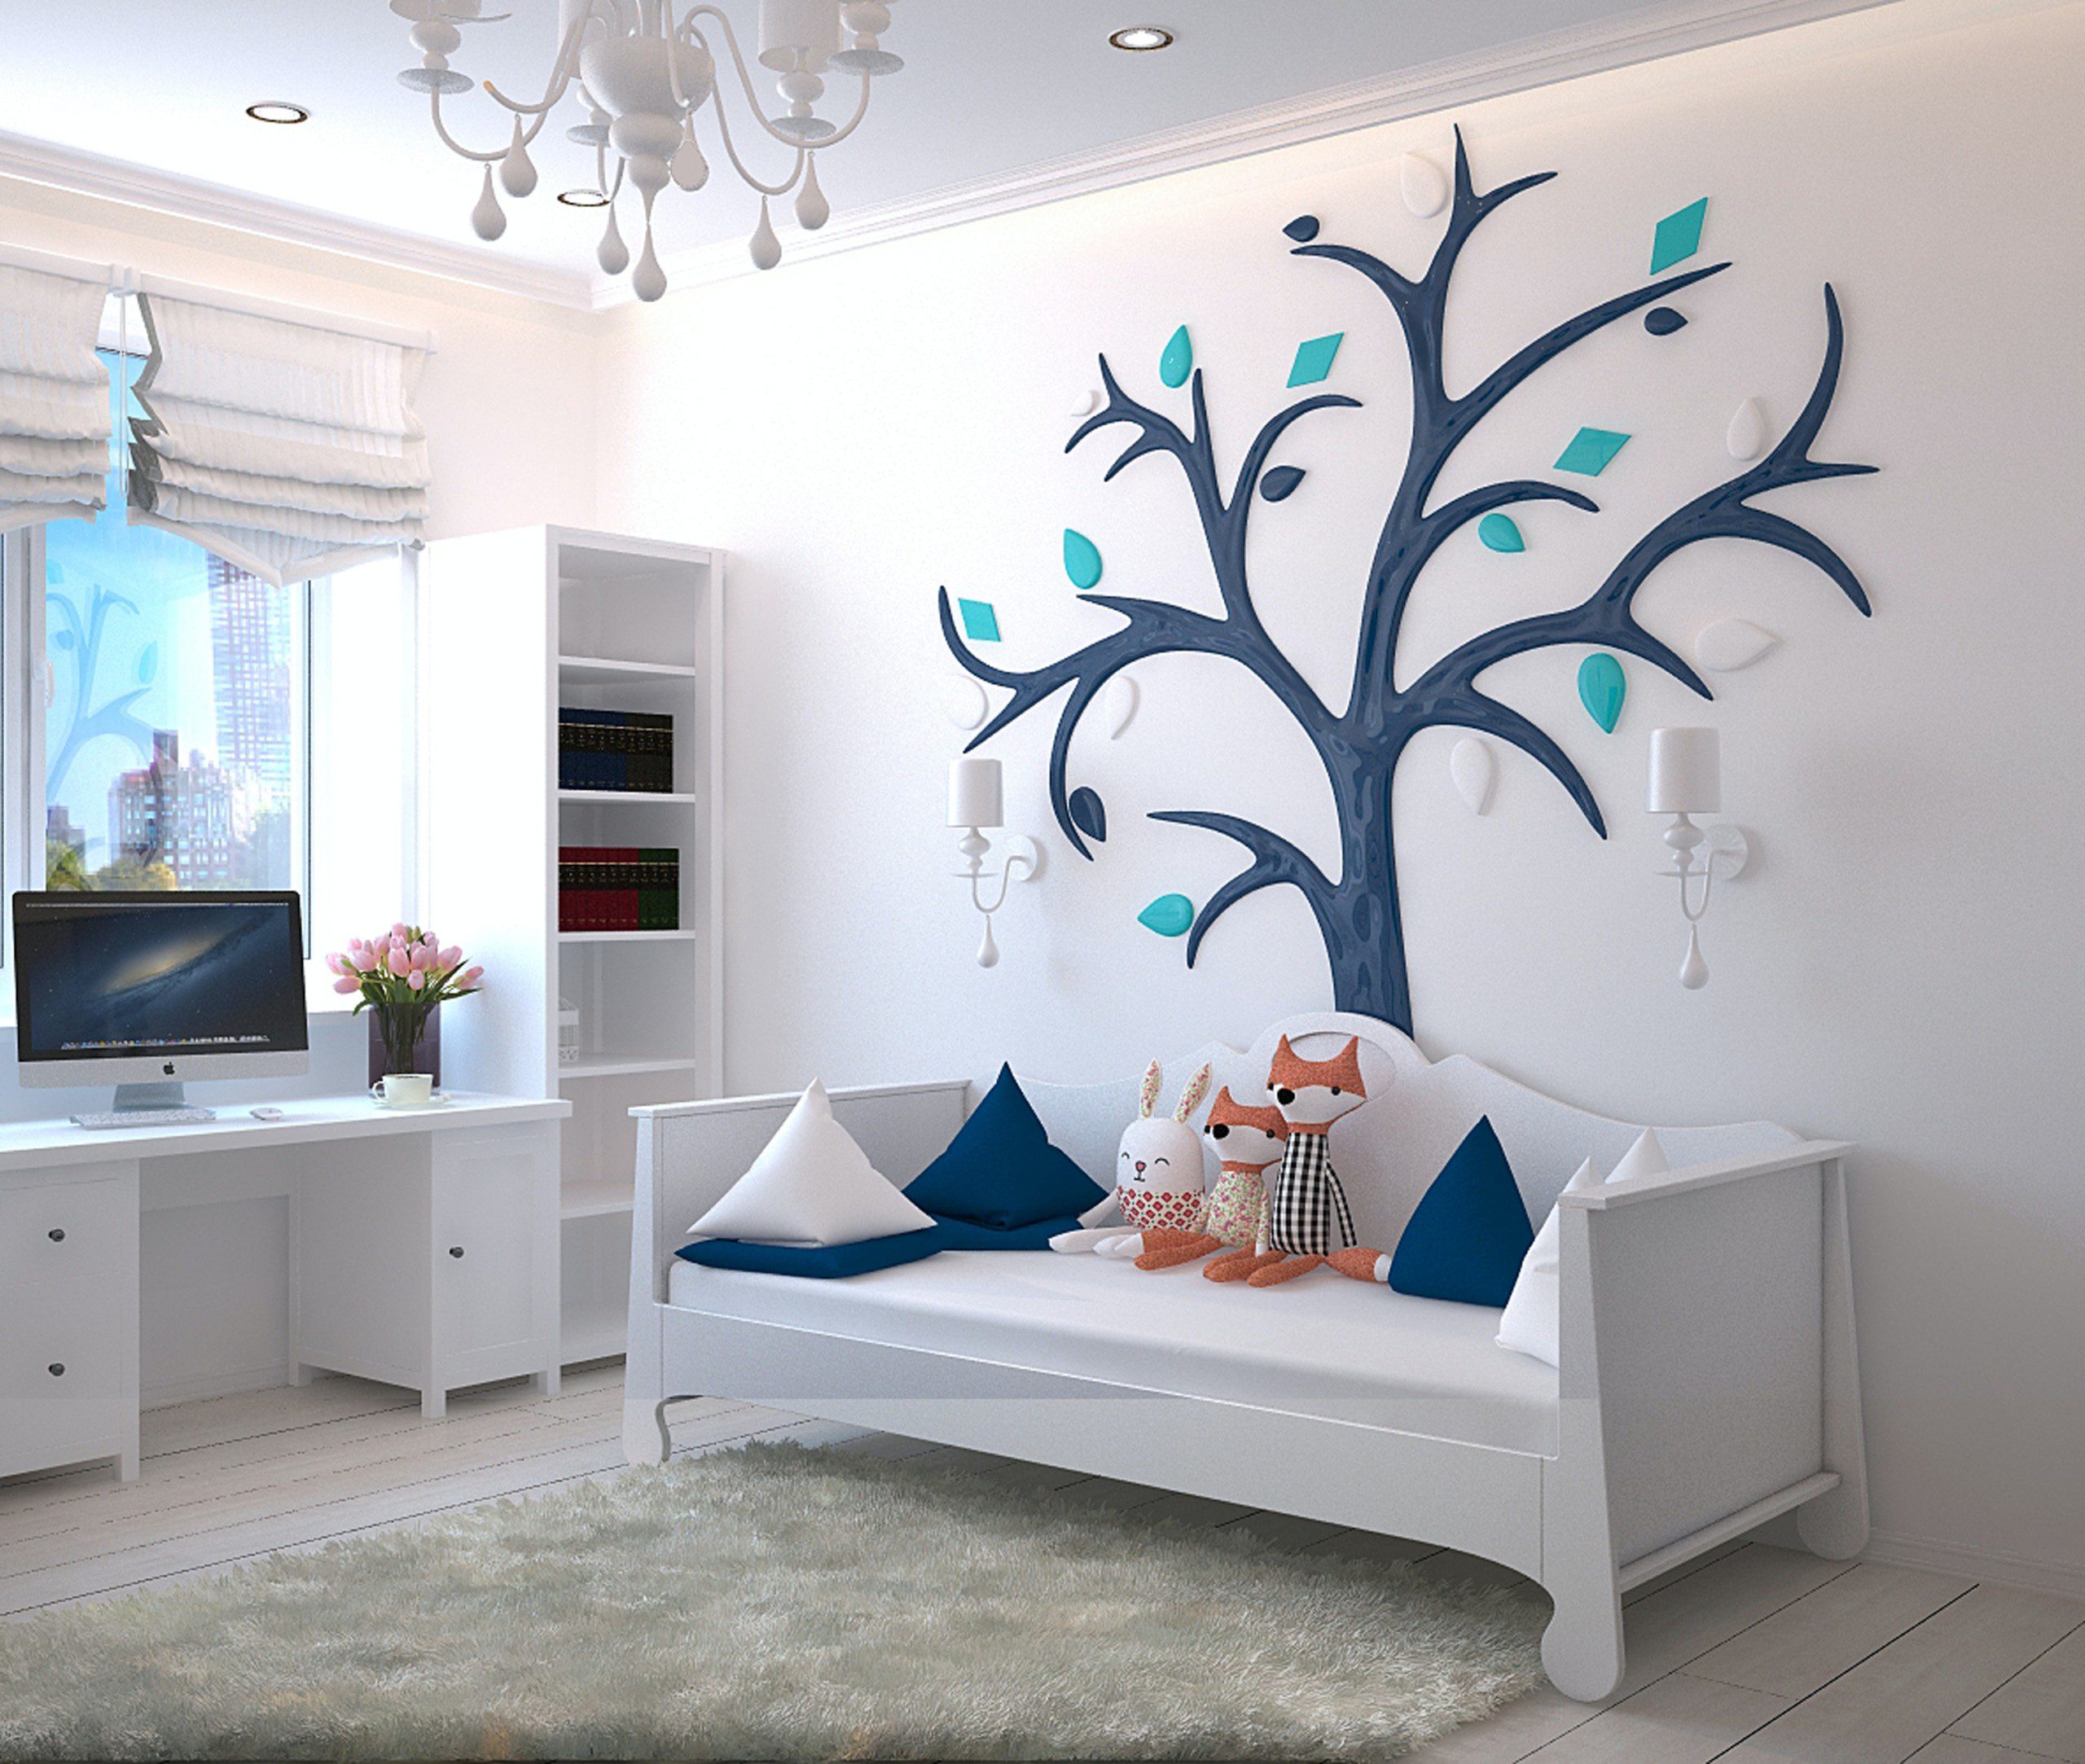 Decoração de quarto infantil com uma árvore de adesivo de parede e raposas de pelúcia decorativas.